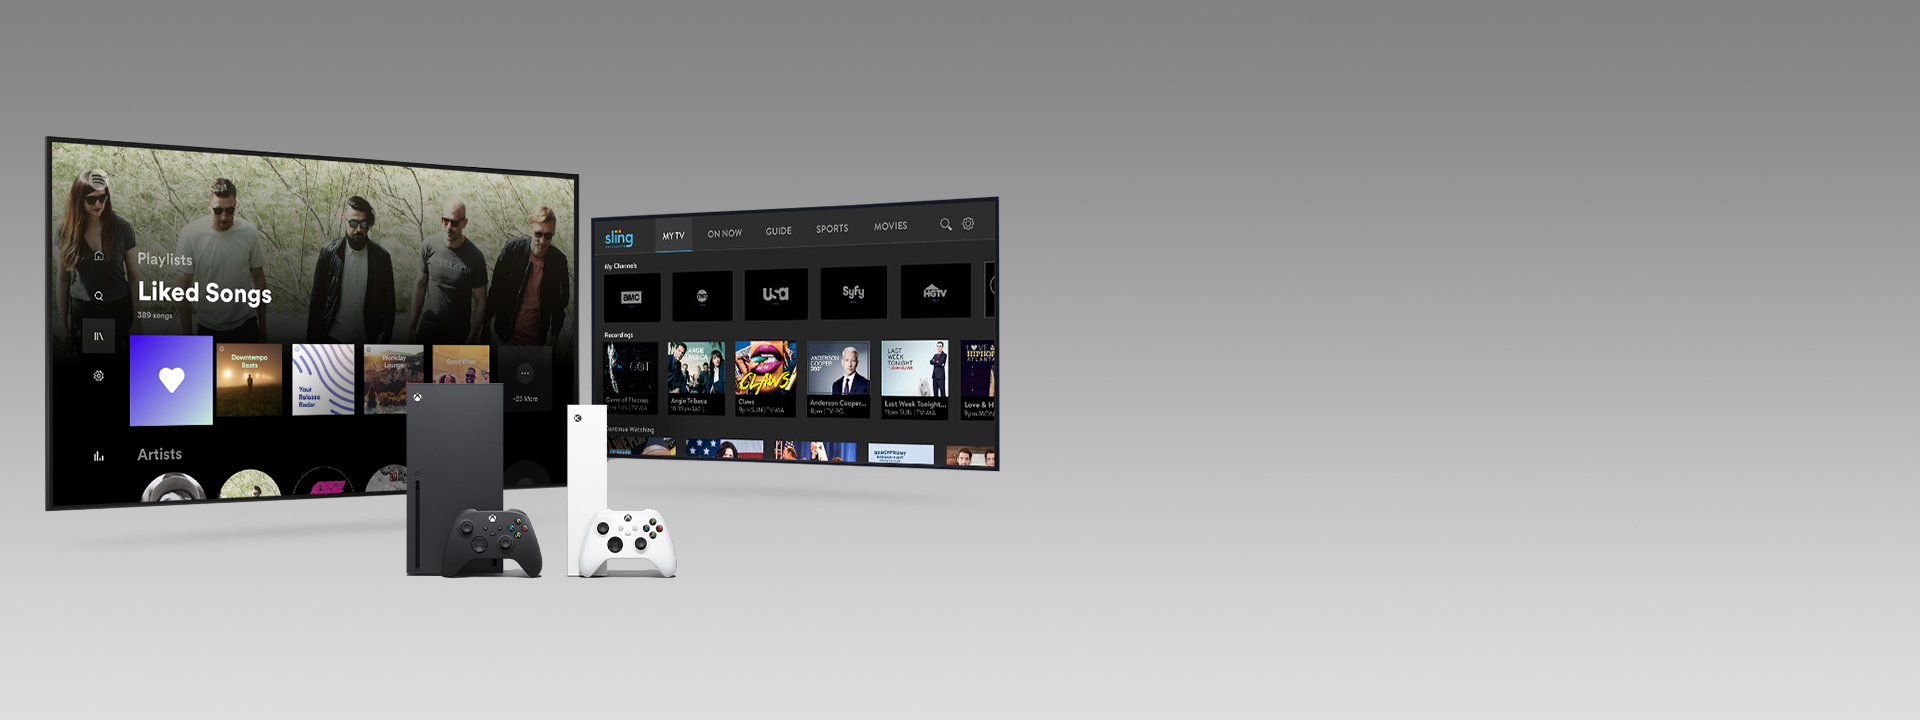 Una Xbox Series X y Series S con sus respectivos controles frente a dos pantallas de televisión en las que se muestran las interfaces de usuario de unas apps.